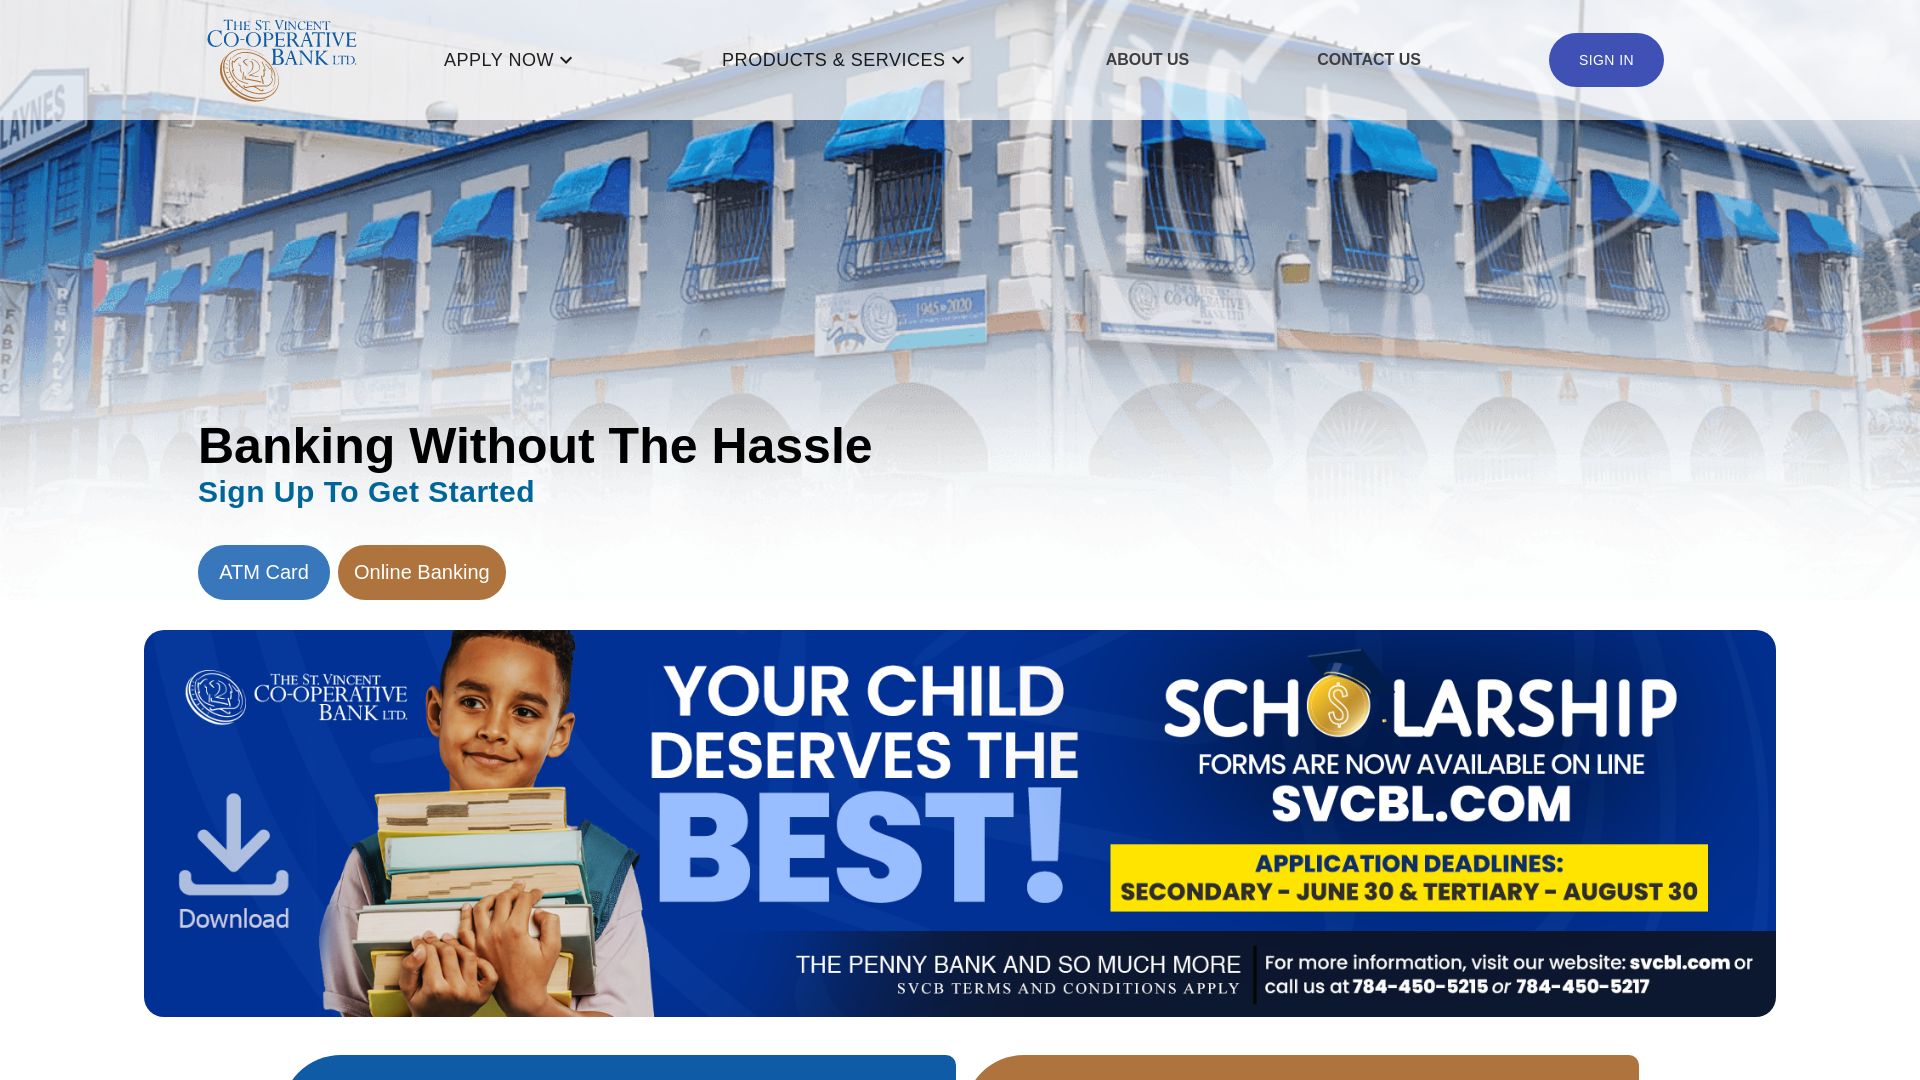 网站状态 svcbl.com 是  在线的